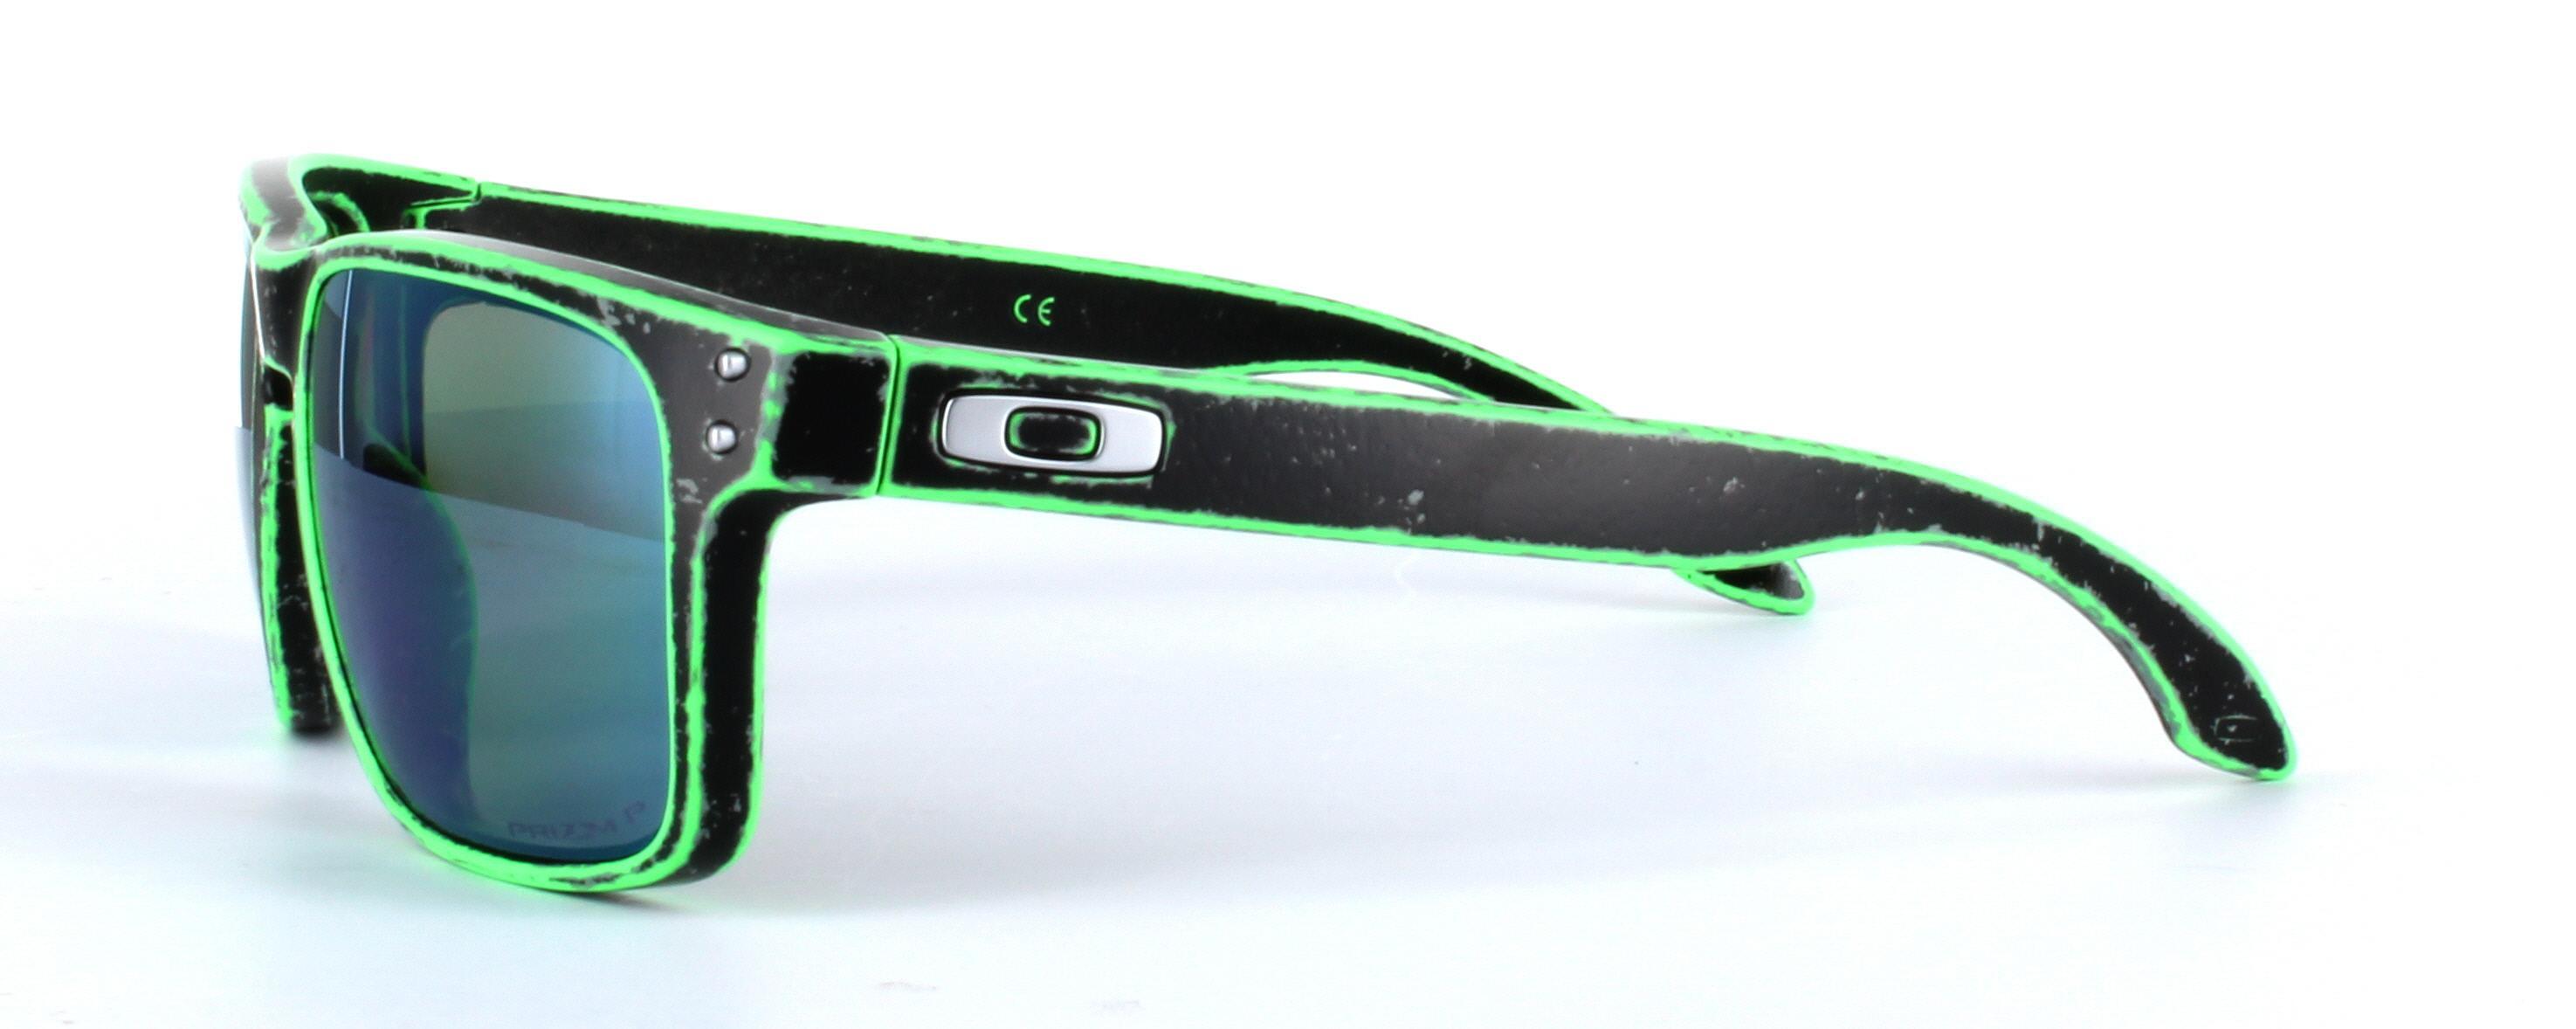 Oakley (9102) Black Full Rim Plastic Prescription Sunglasses - Image View 2